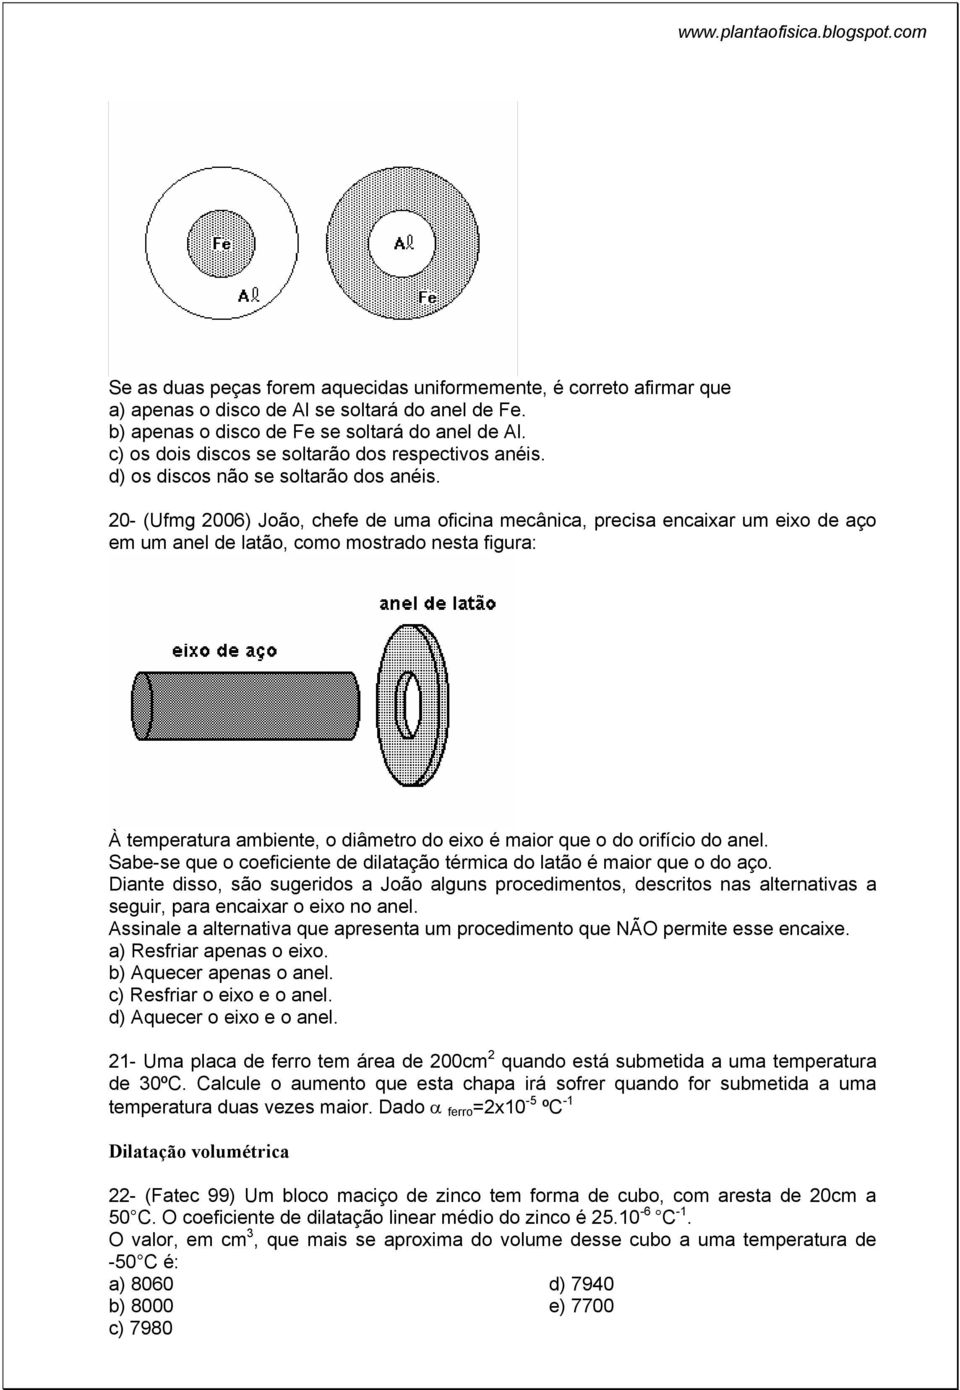 20- (Ufmg 2006) João, chefe de uma oficina mecânica, precisa encaixar um eixo de aço em um anel de latão, como mostrado nesta figura: À temperatura ambiente, o diâmetro do eixo é maior que o do